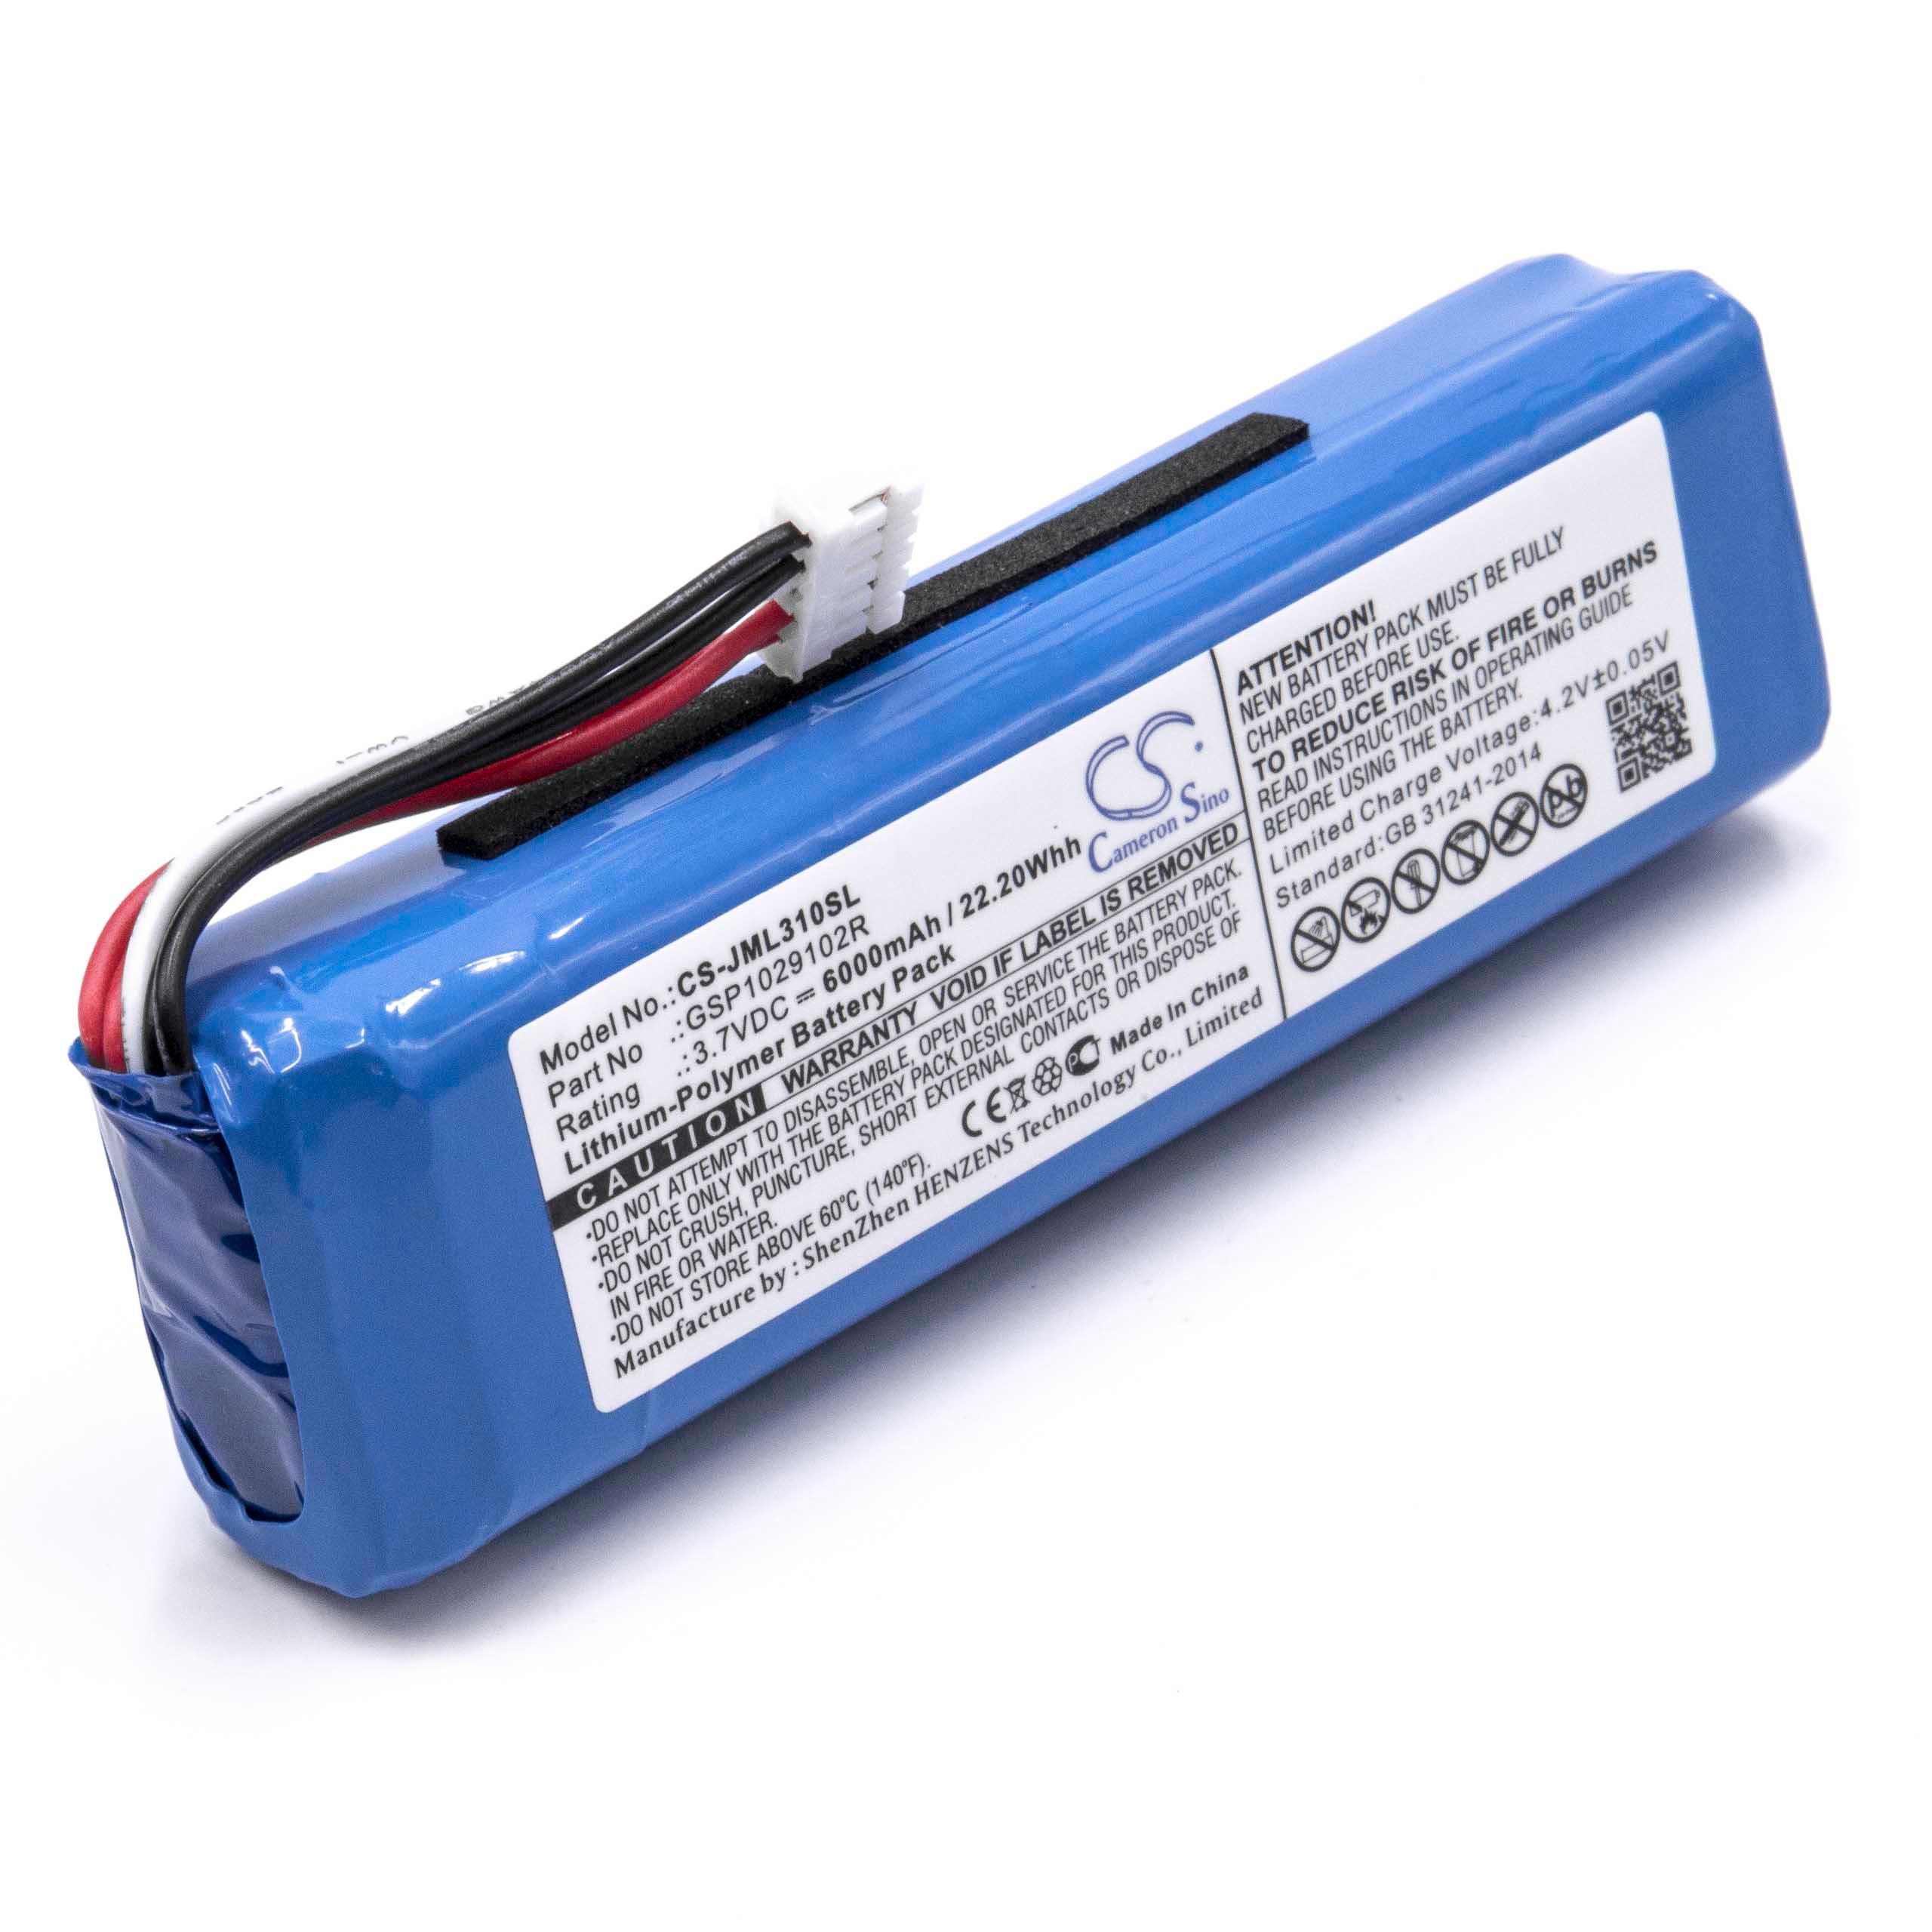  Battery replaces JBL GSP1029102R for JBLLoudspeaker - Li-polymer 6000 mAh